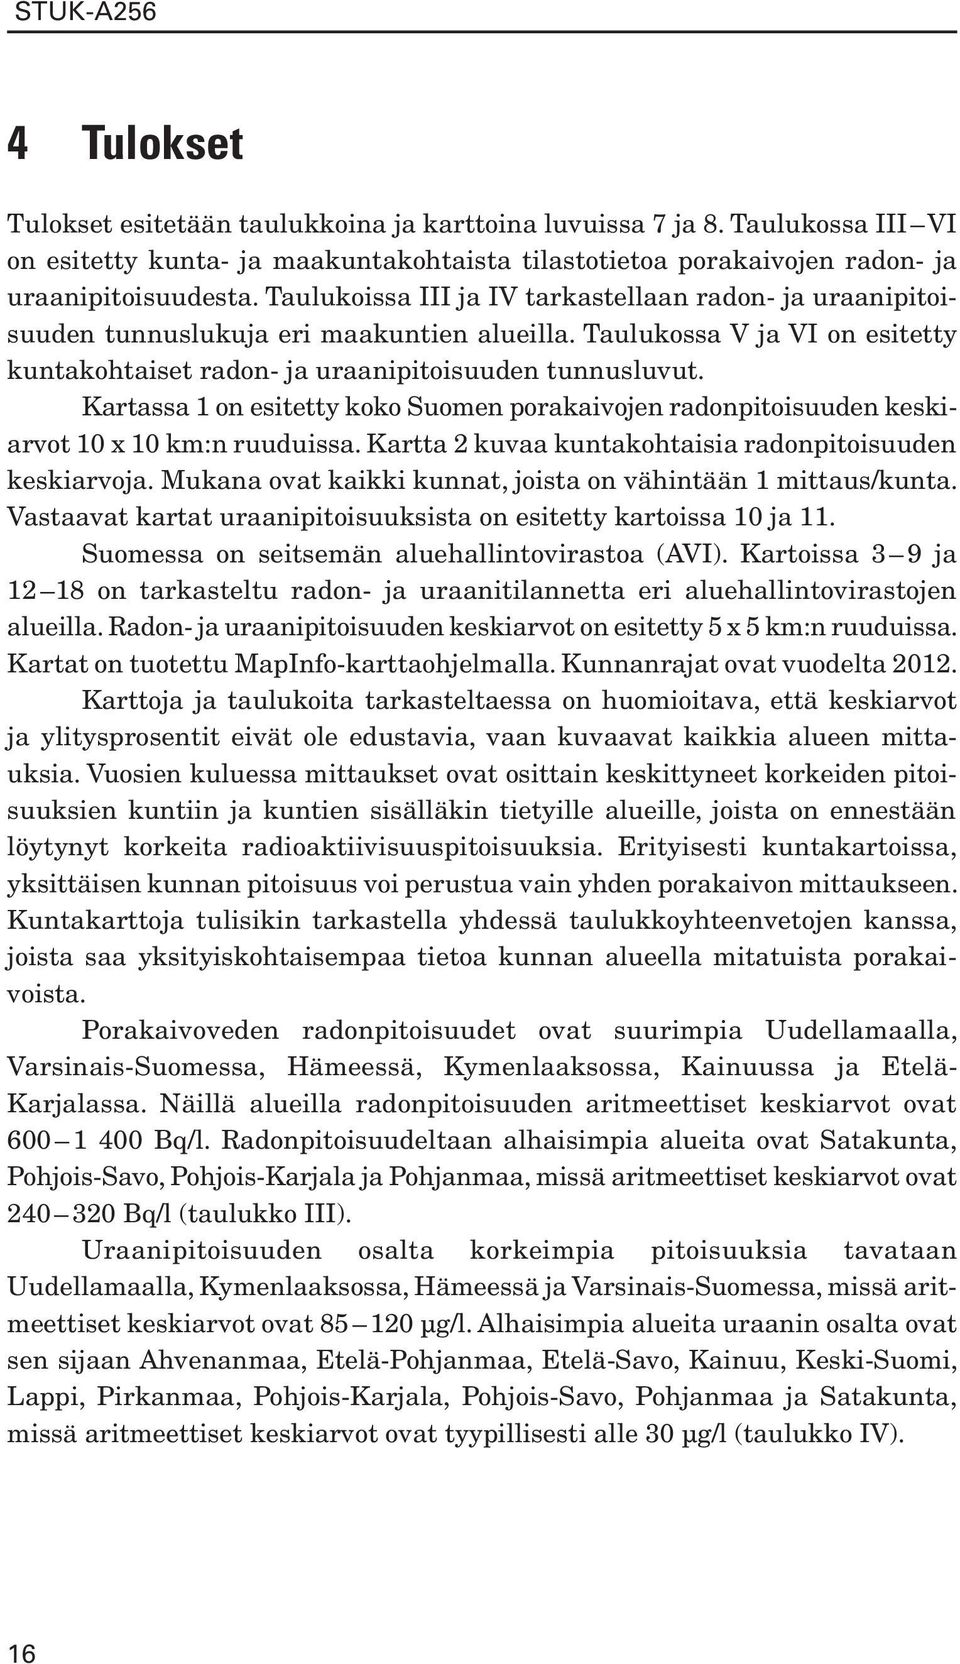 Kartassa 1 on esitetty koko Suomen porakaivojen radonpitoisuuden keskiarvot 10 x 10 km:n ruuduissa. Kartta 2 kuvaa kuntakohtaisia radonpitoisuuden keskiarvoja.